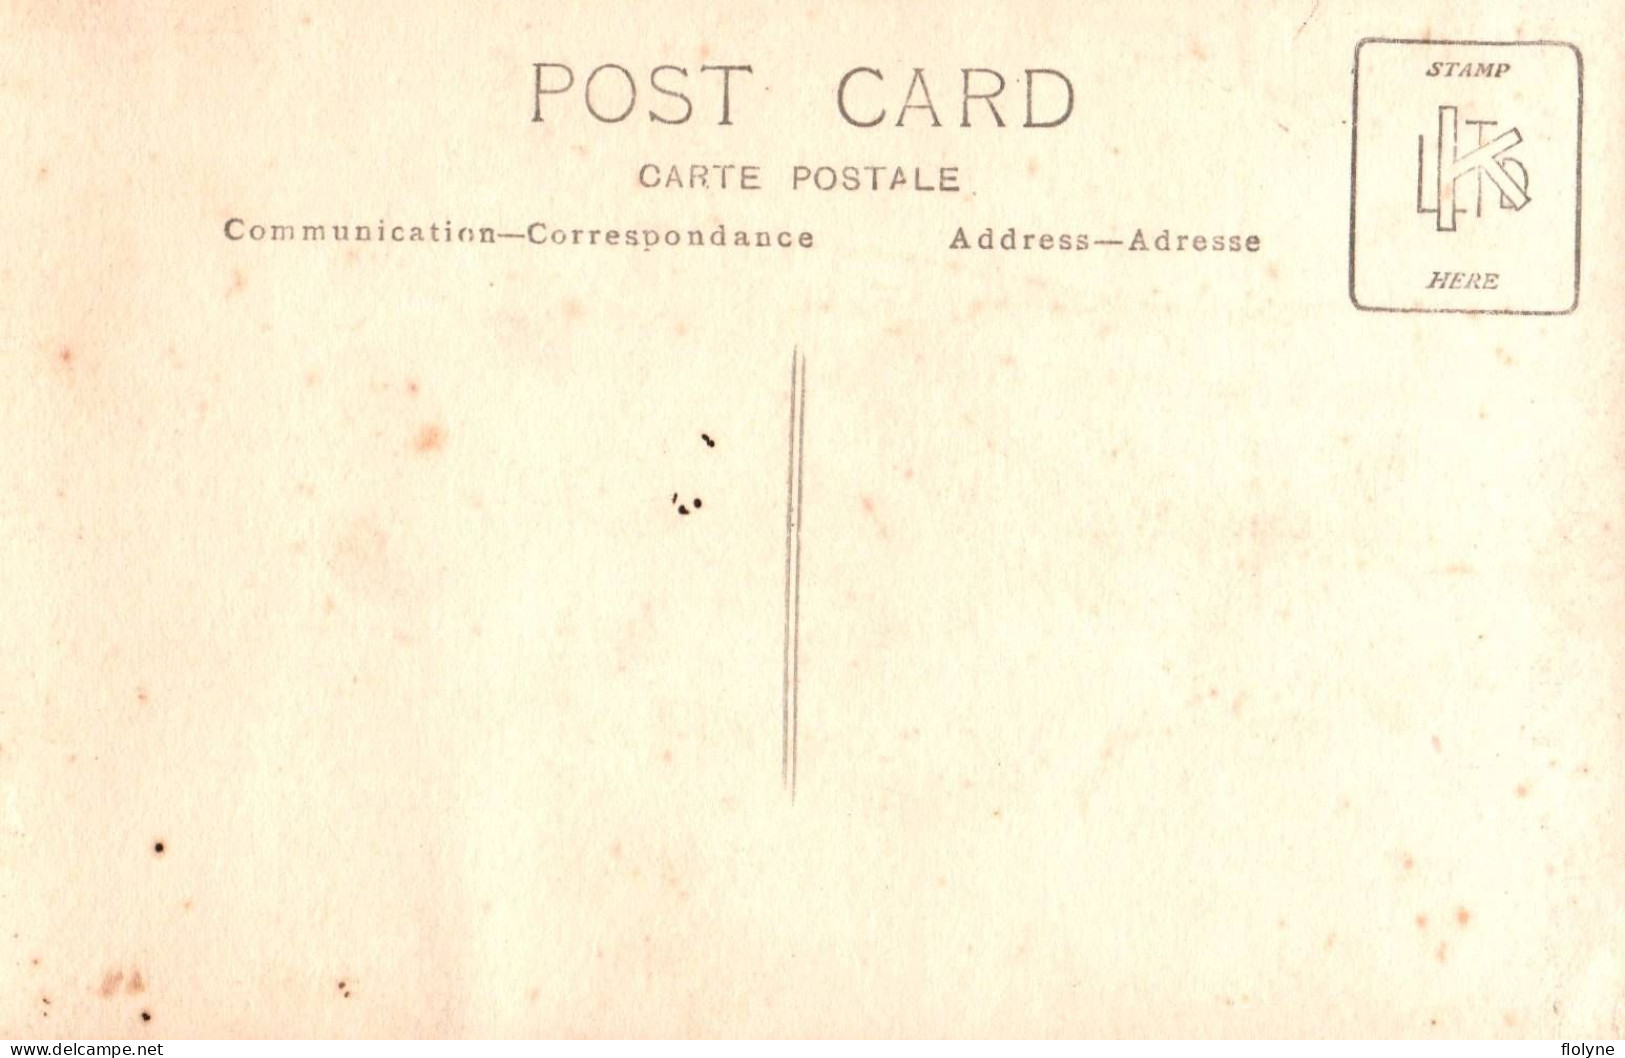 auch - 8 cartes photos - la fête du collège , avril 1923 - théâtre comédiens - cachet à sec photographe LAFONTAN